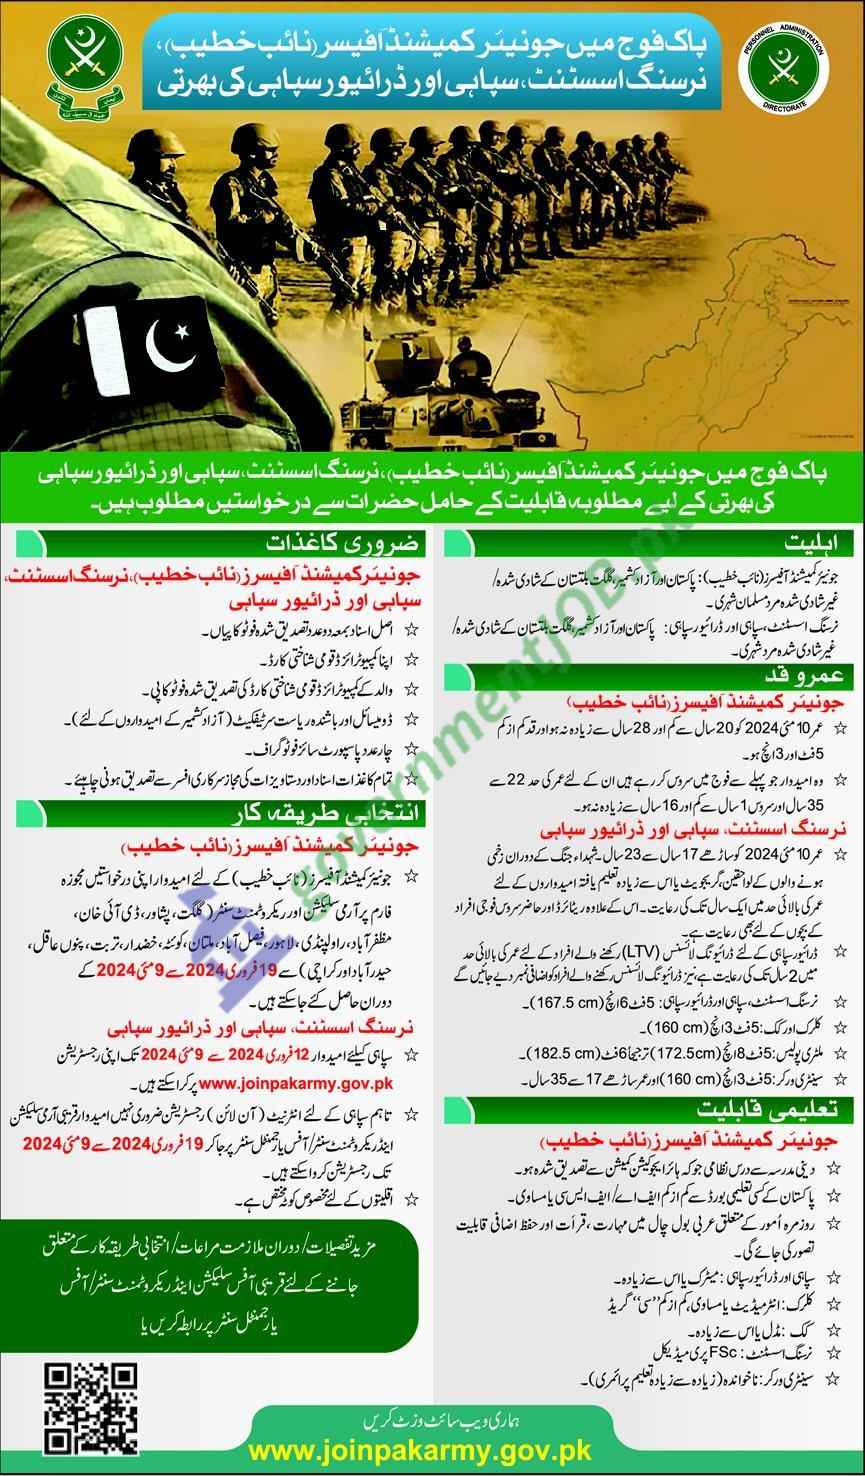 Join Pakistan Army Jobs 2024 